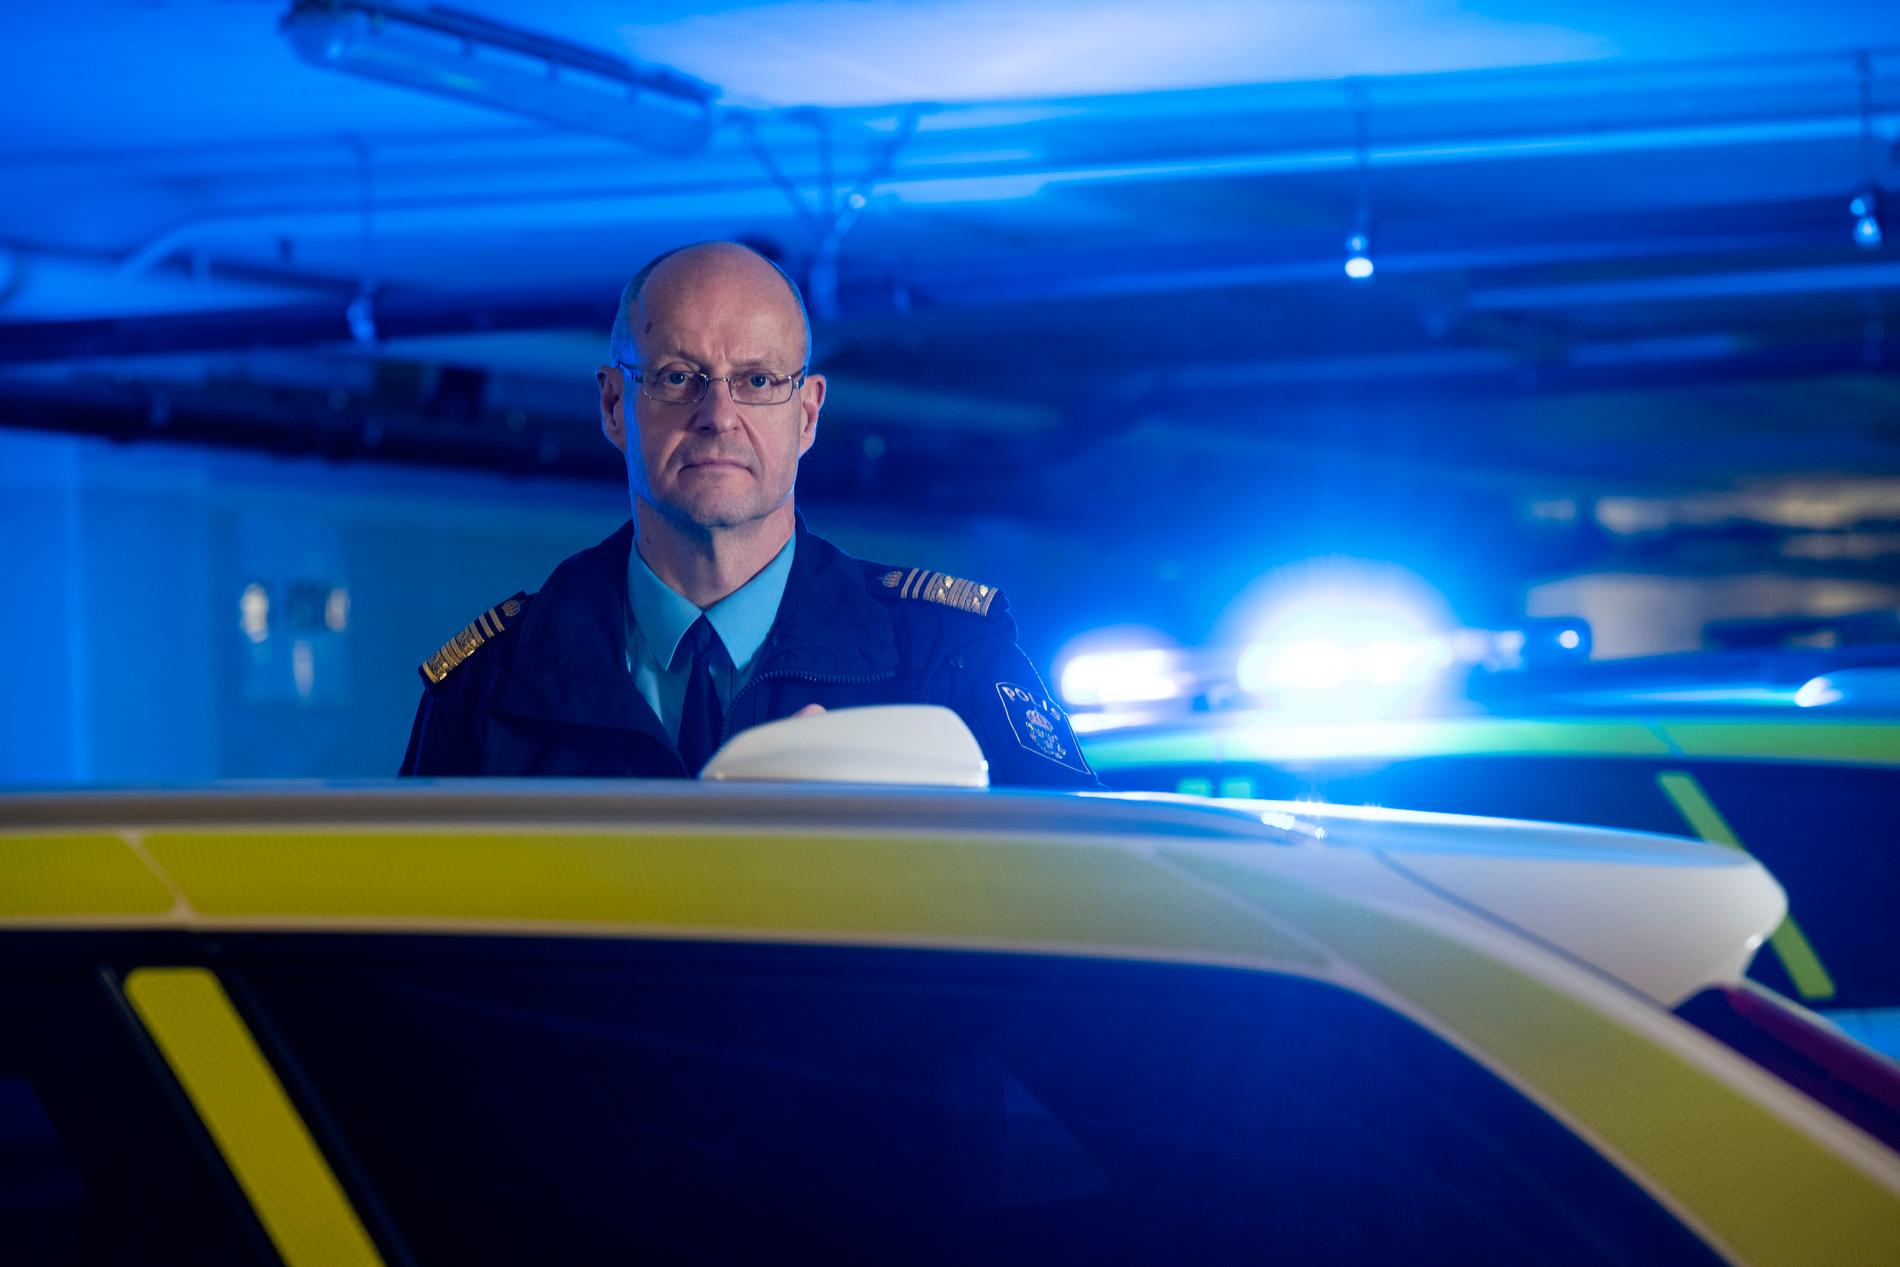 Stockholms regionpolischef Mats Löfving hittades död i onsdags kväll. Han blev 61 år gammal. 